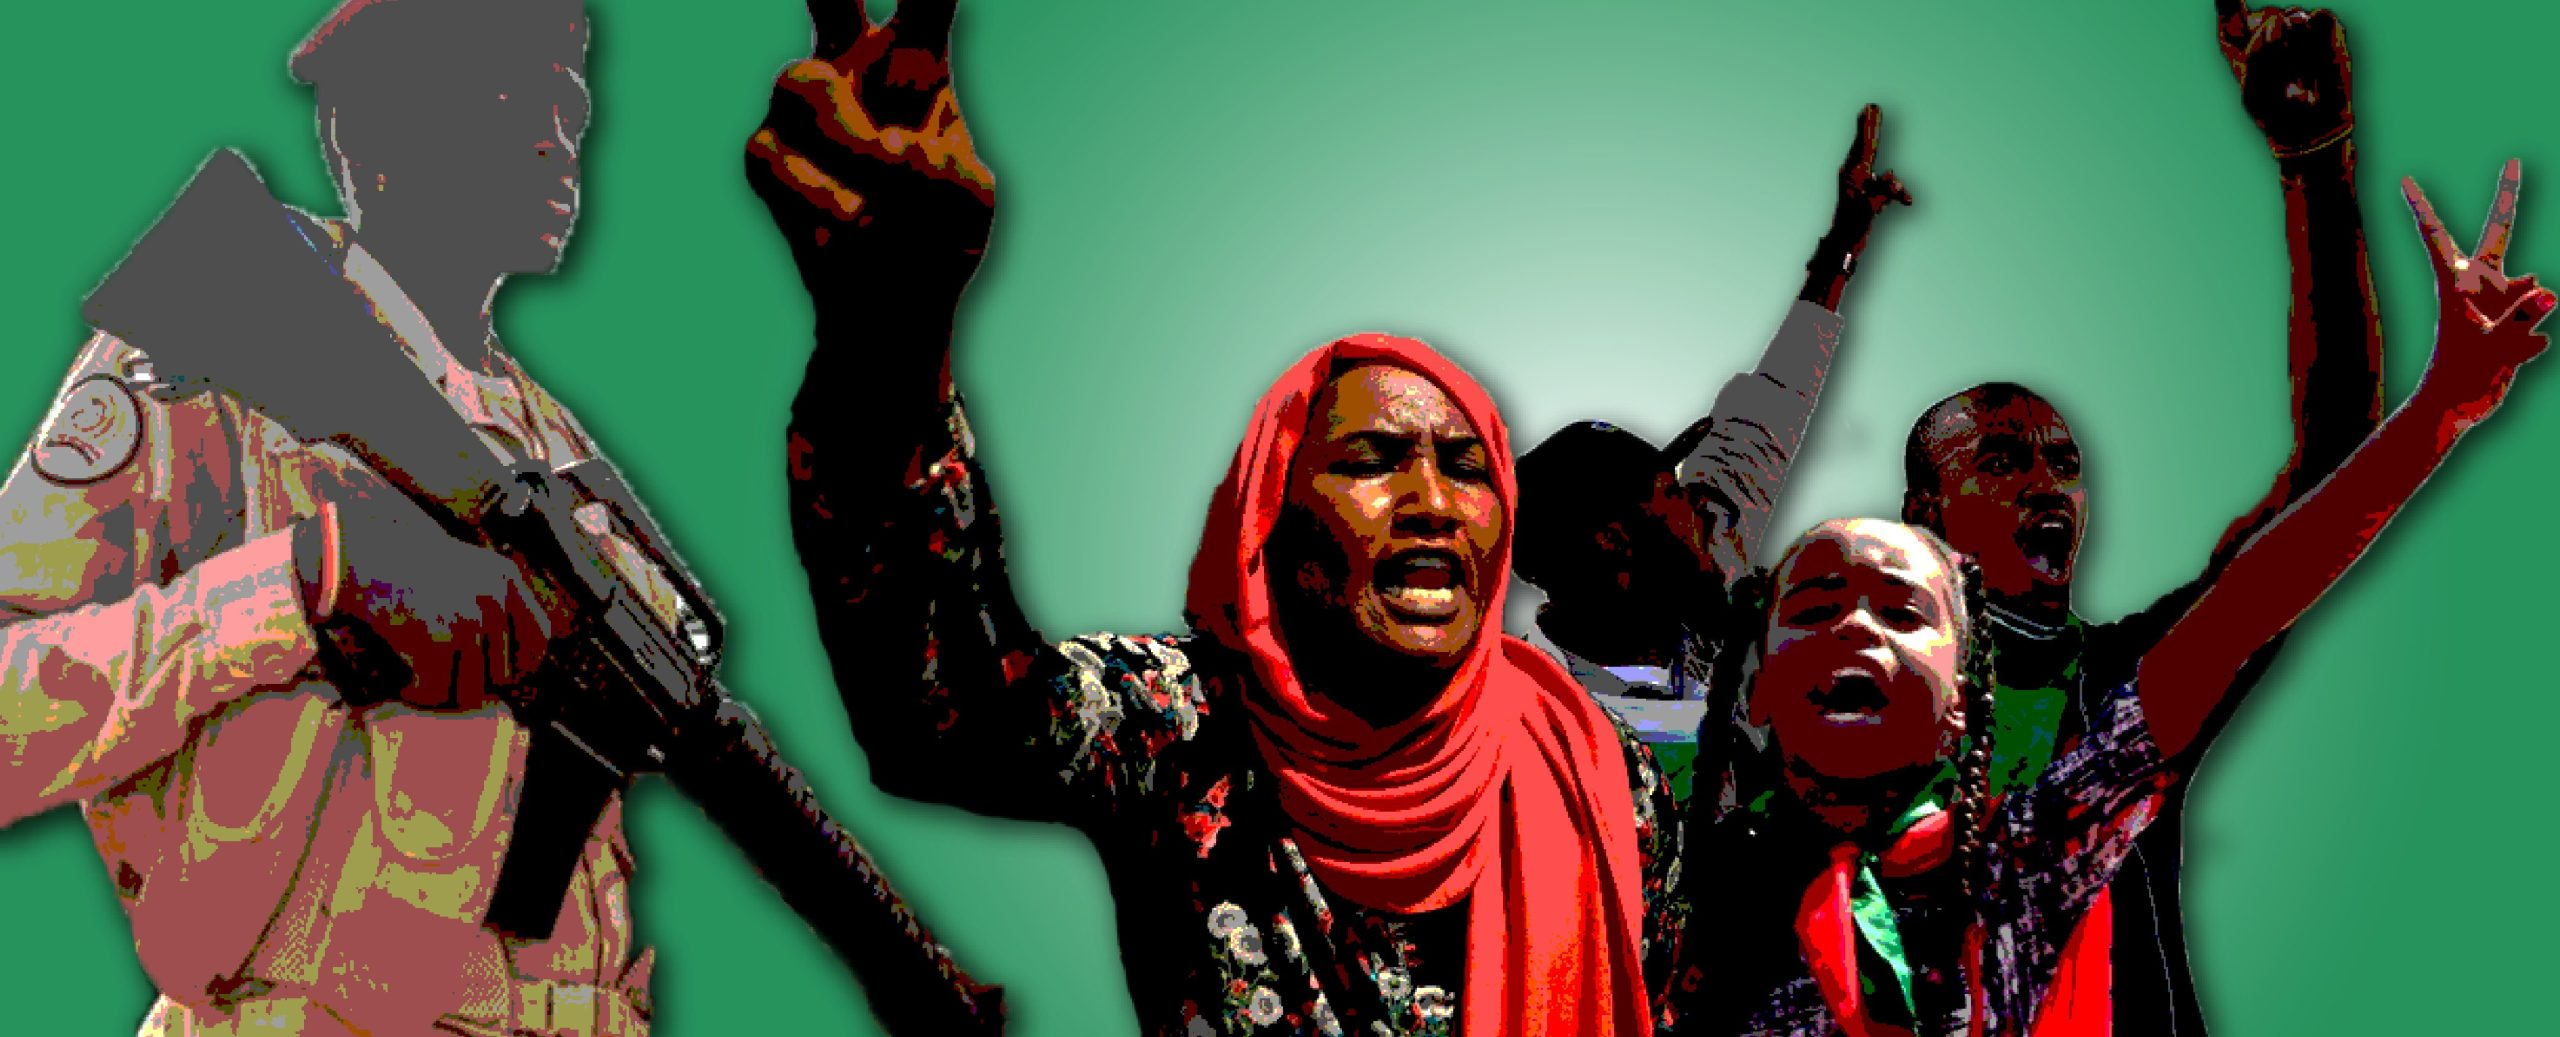 Ce que l’accord conclu suite au coup d’État signifie pour la transition démocratique au Soudan